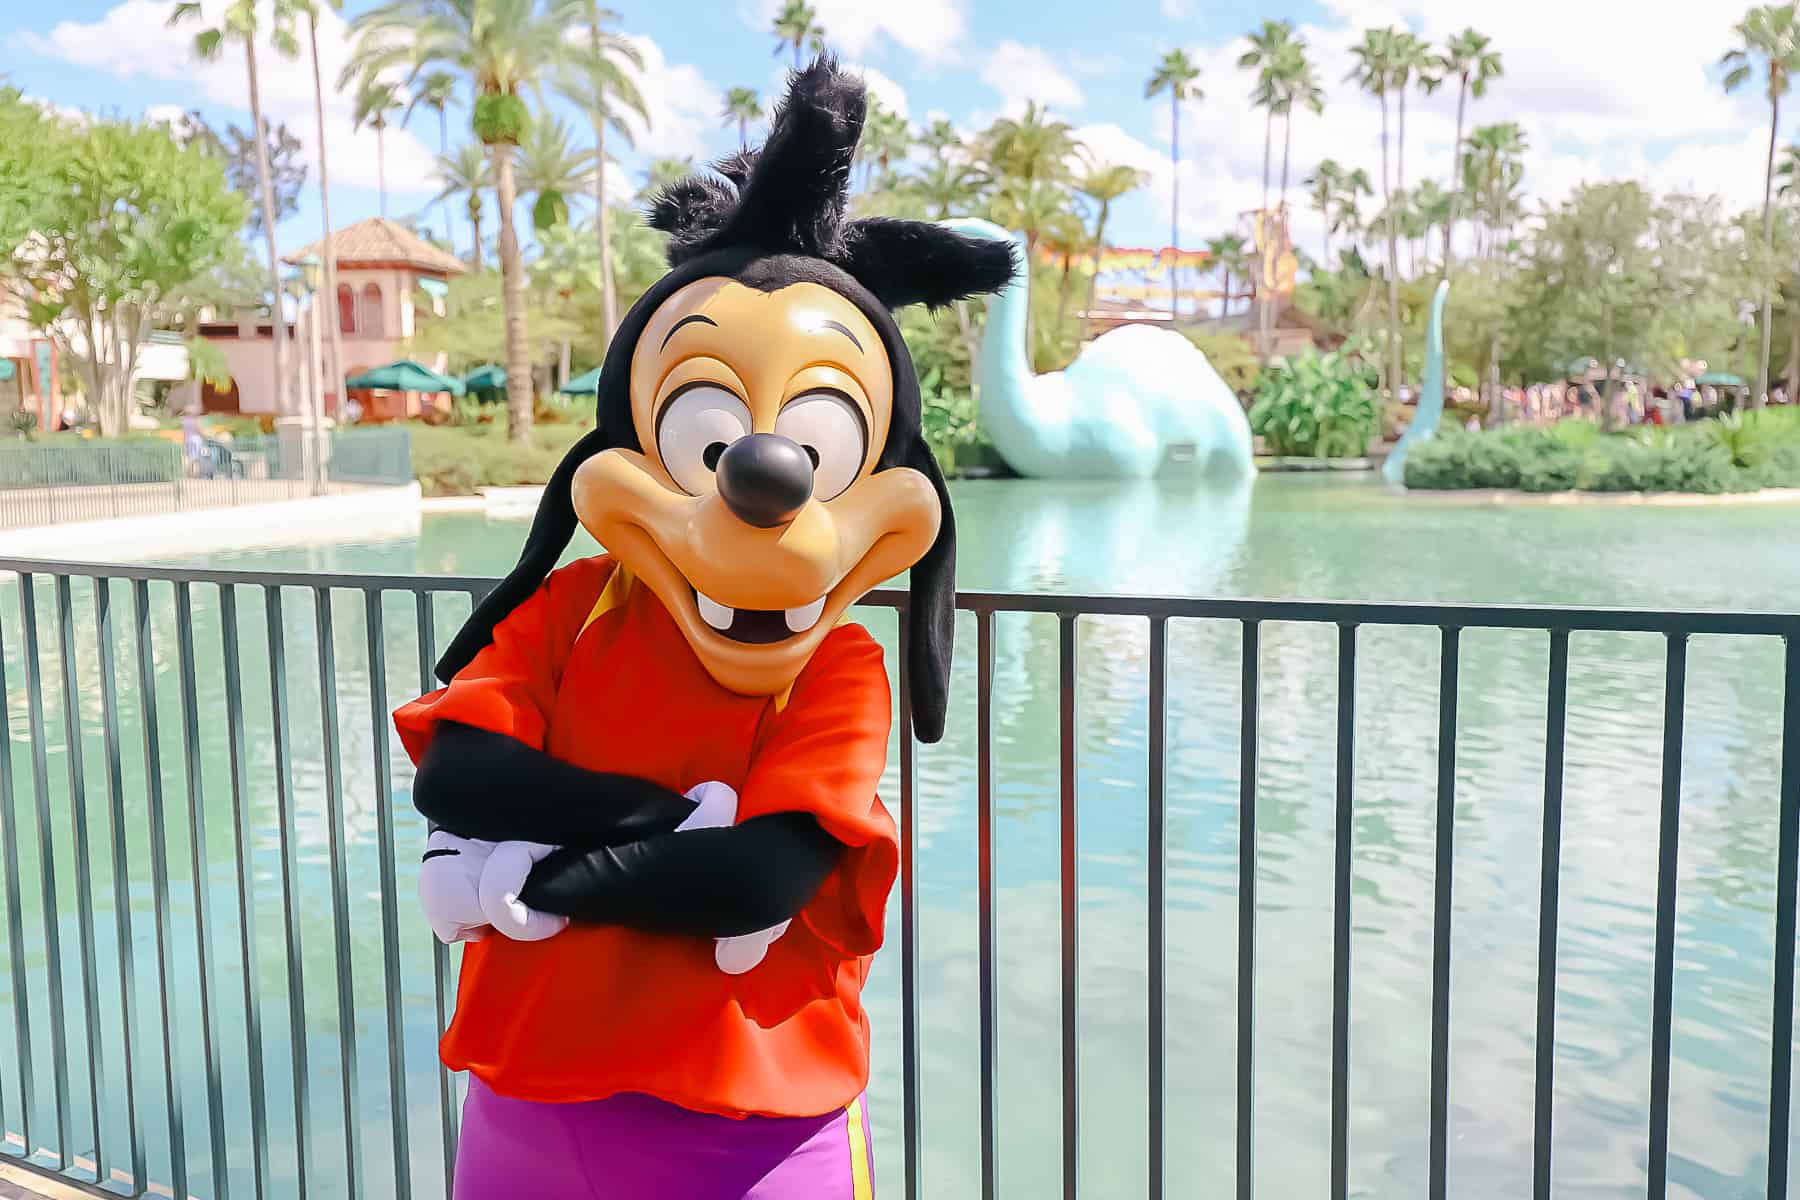 Meet Max and Goofy at Disney's Hollywood Studios